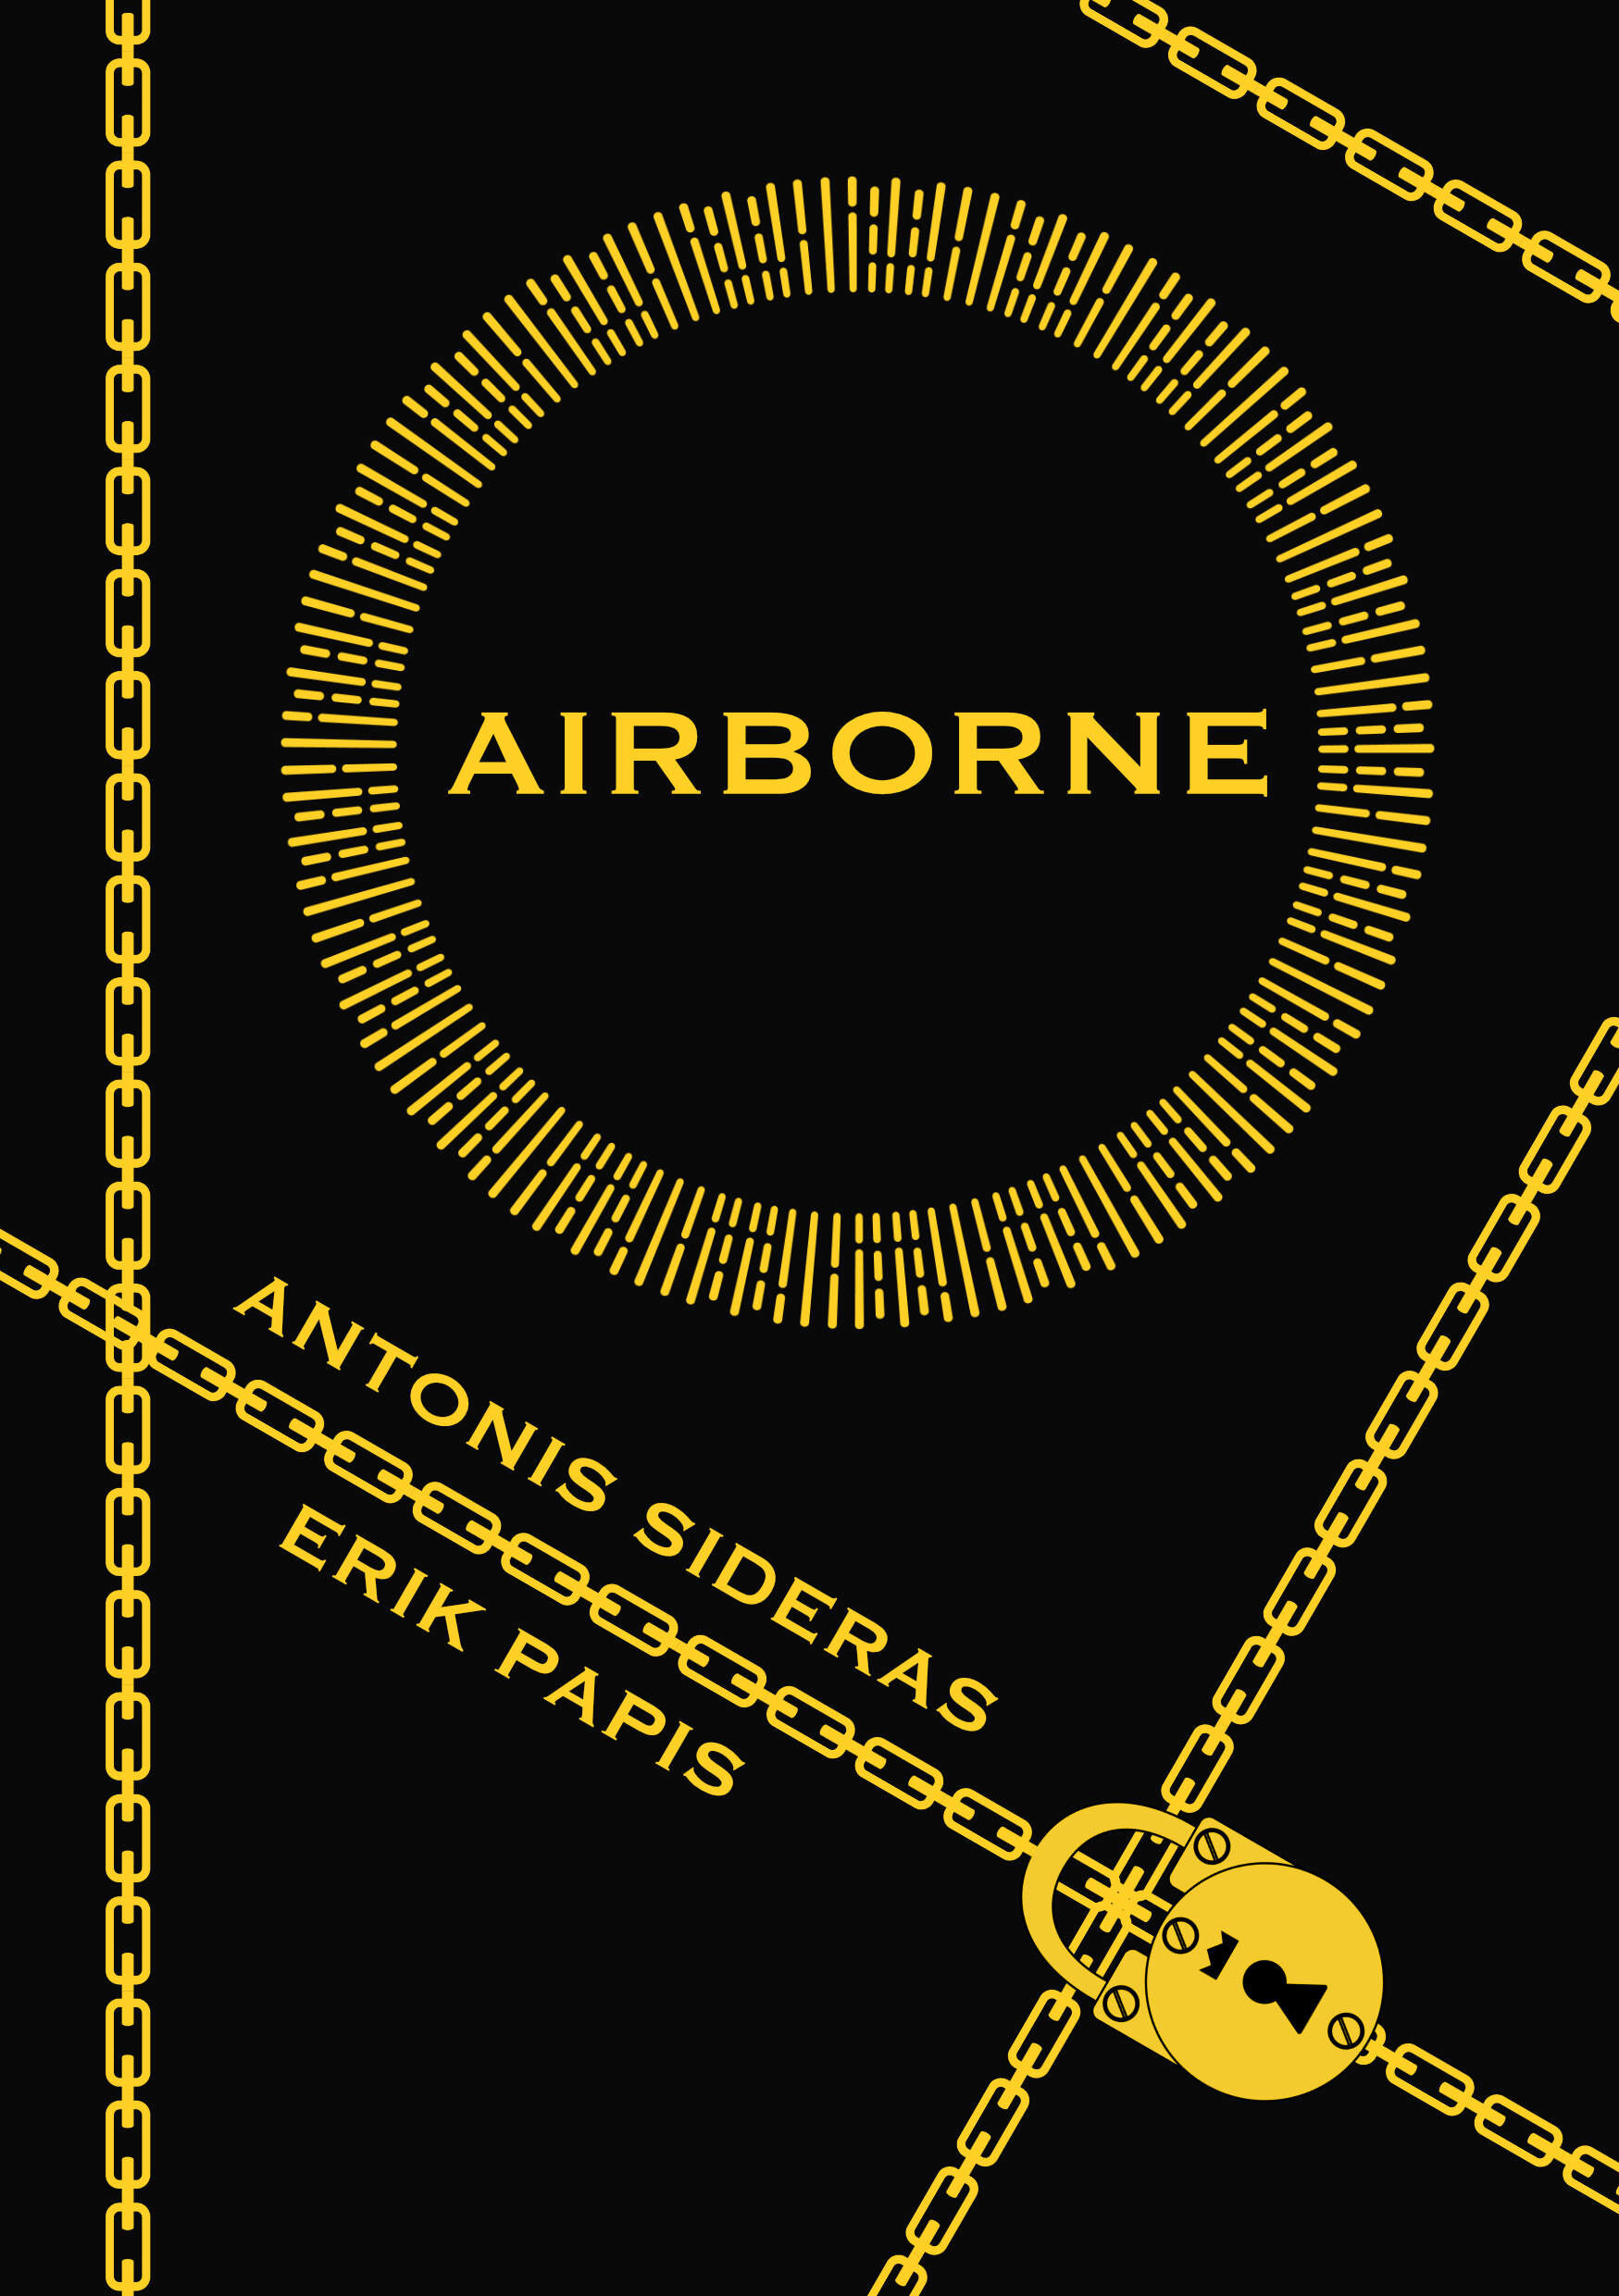 Airborne-1.jpg